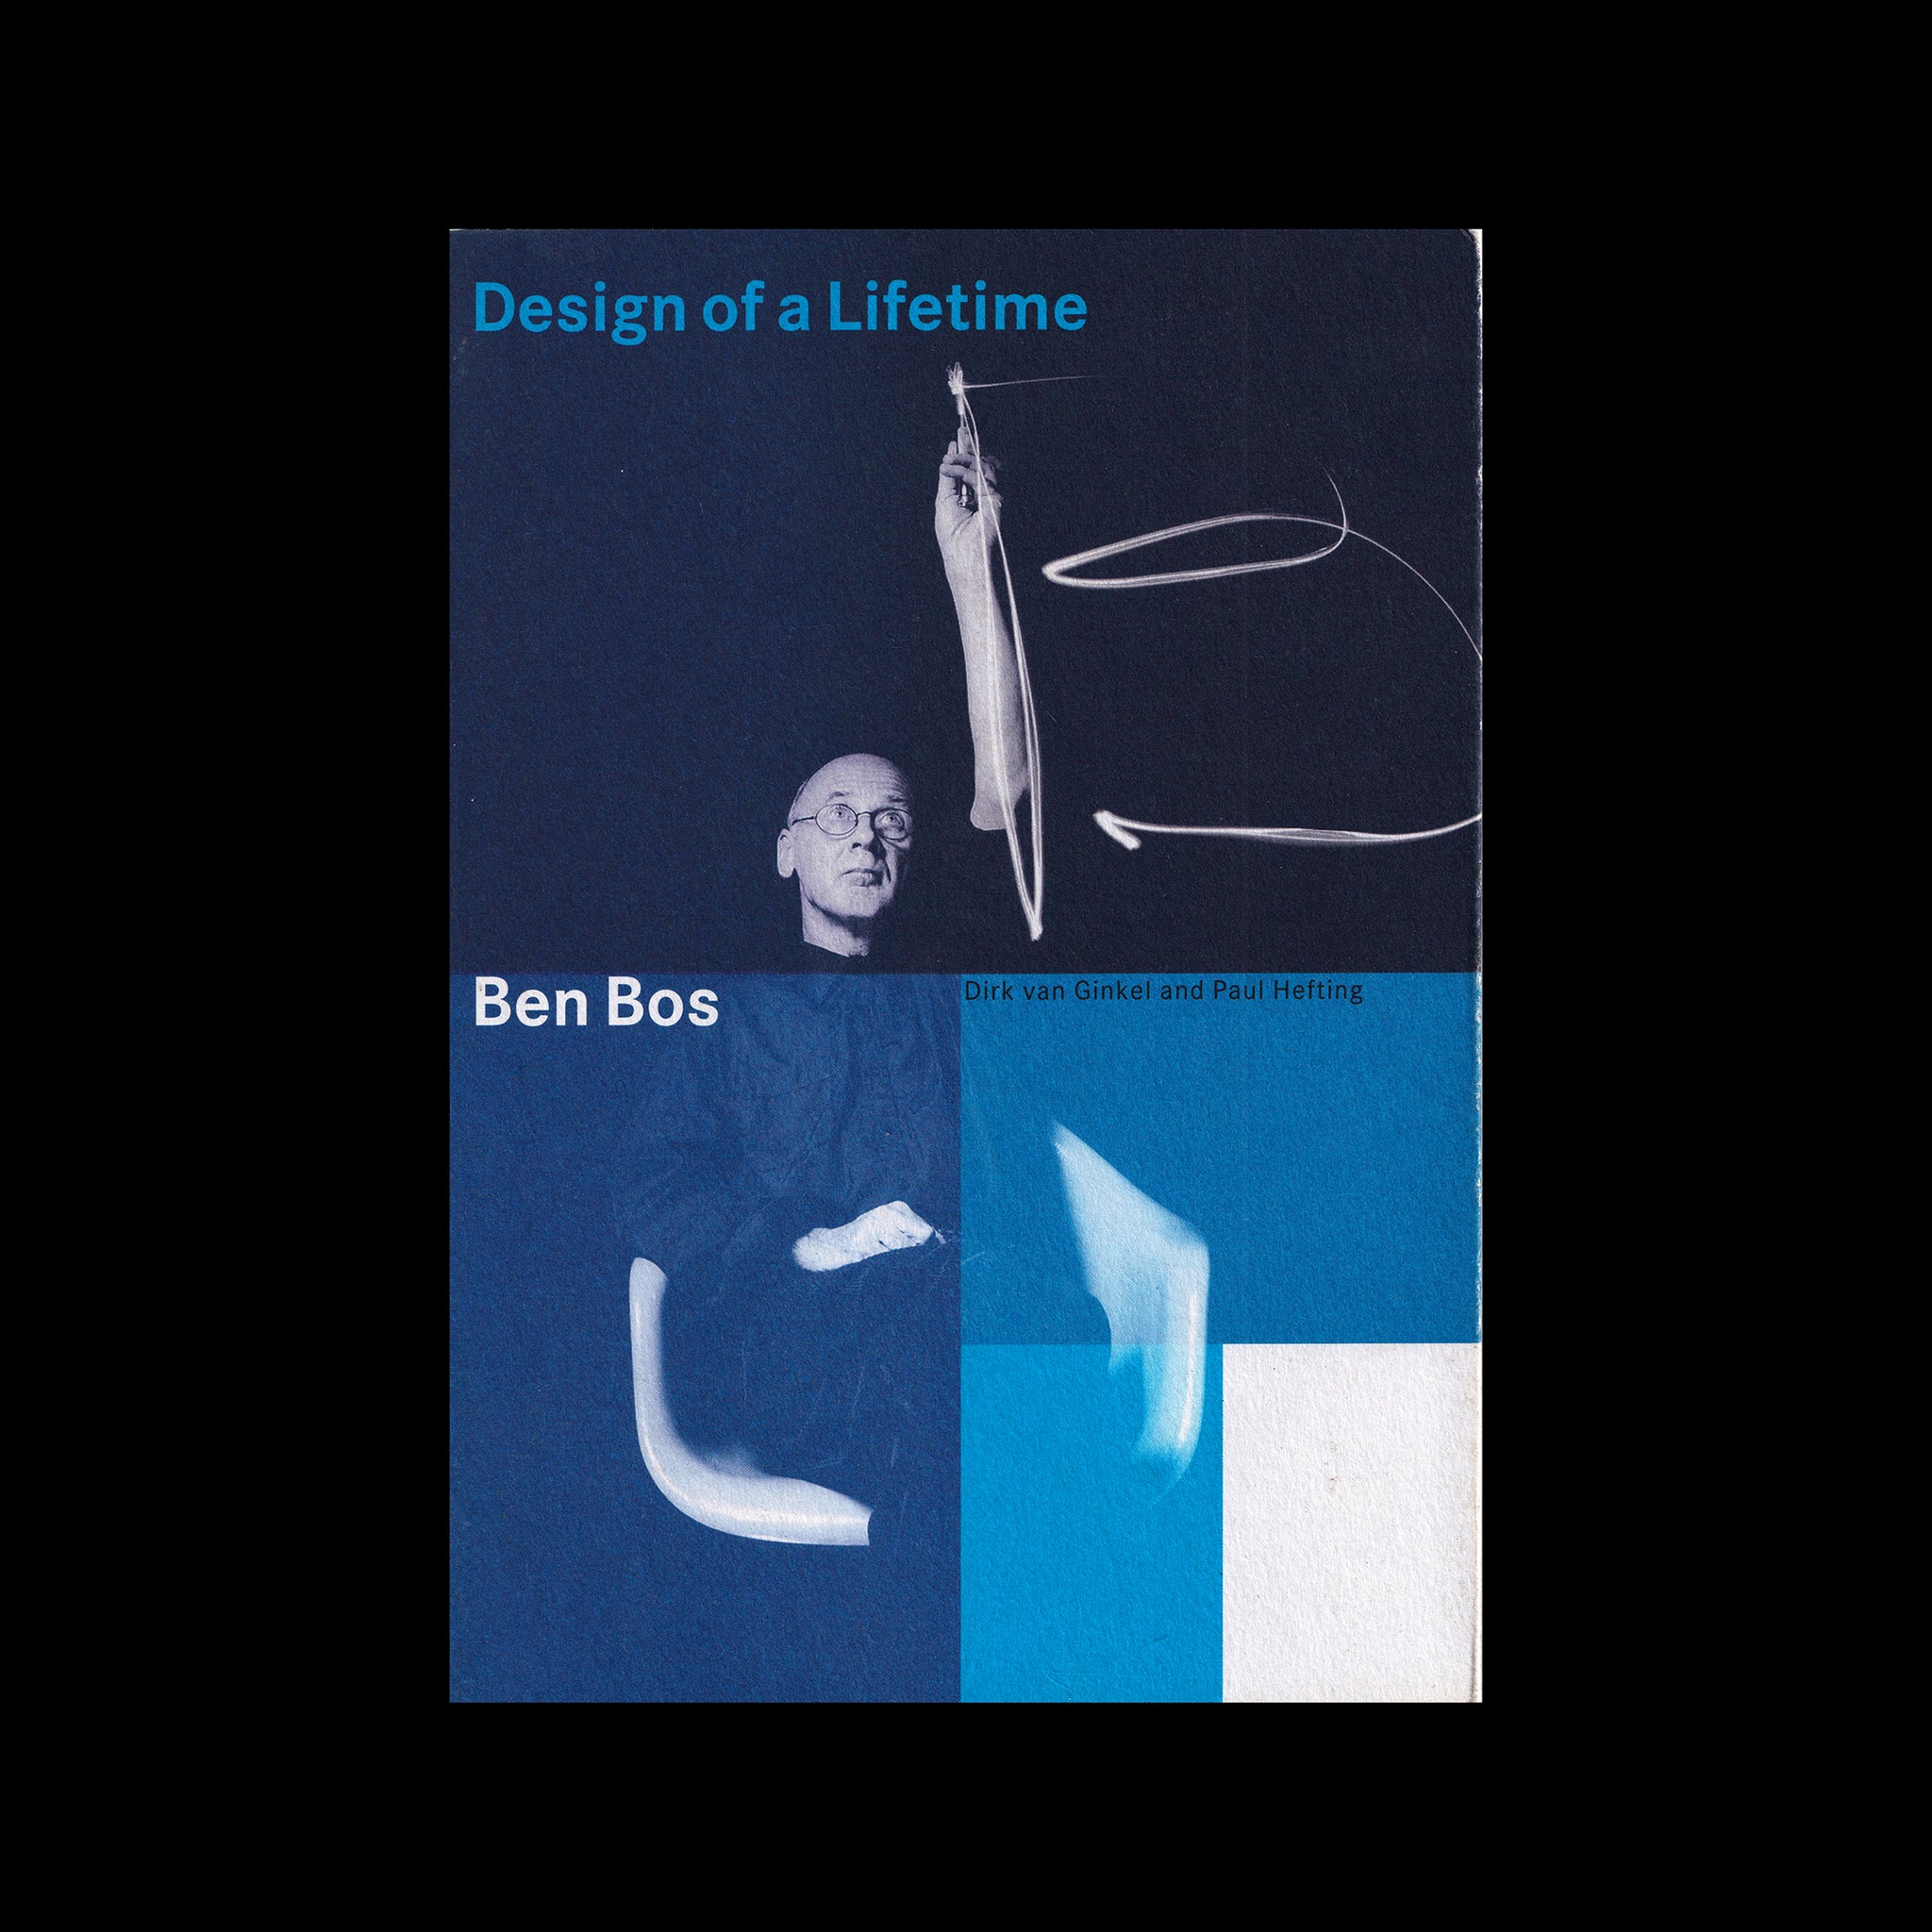 Design of a Lifetime, Ben Bos 2000